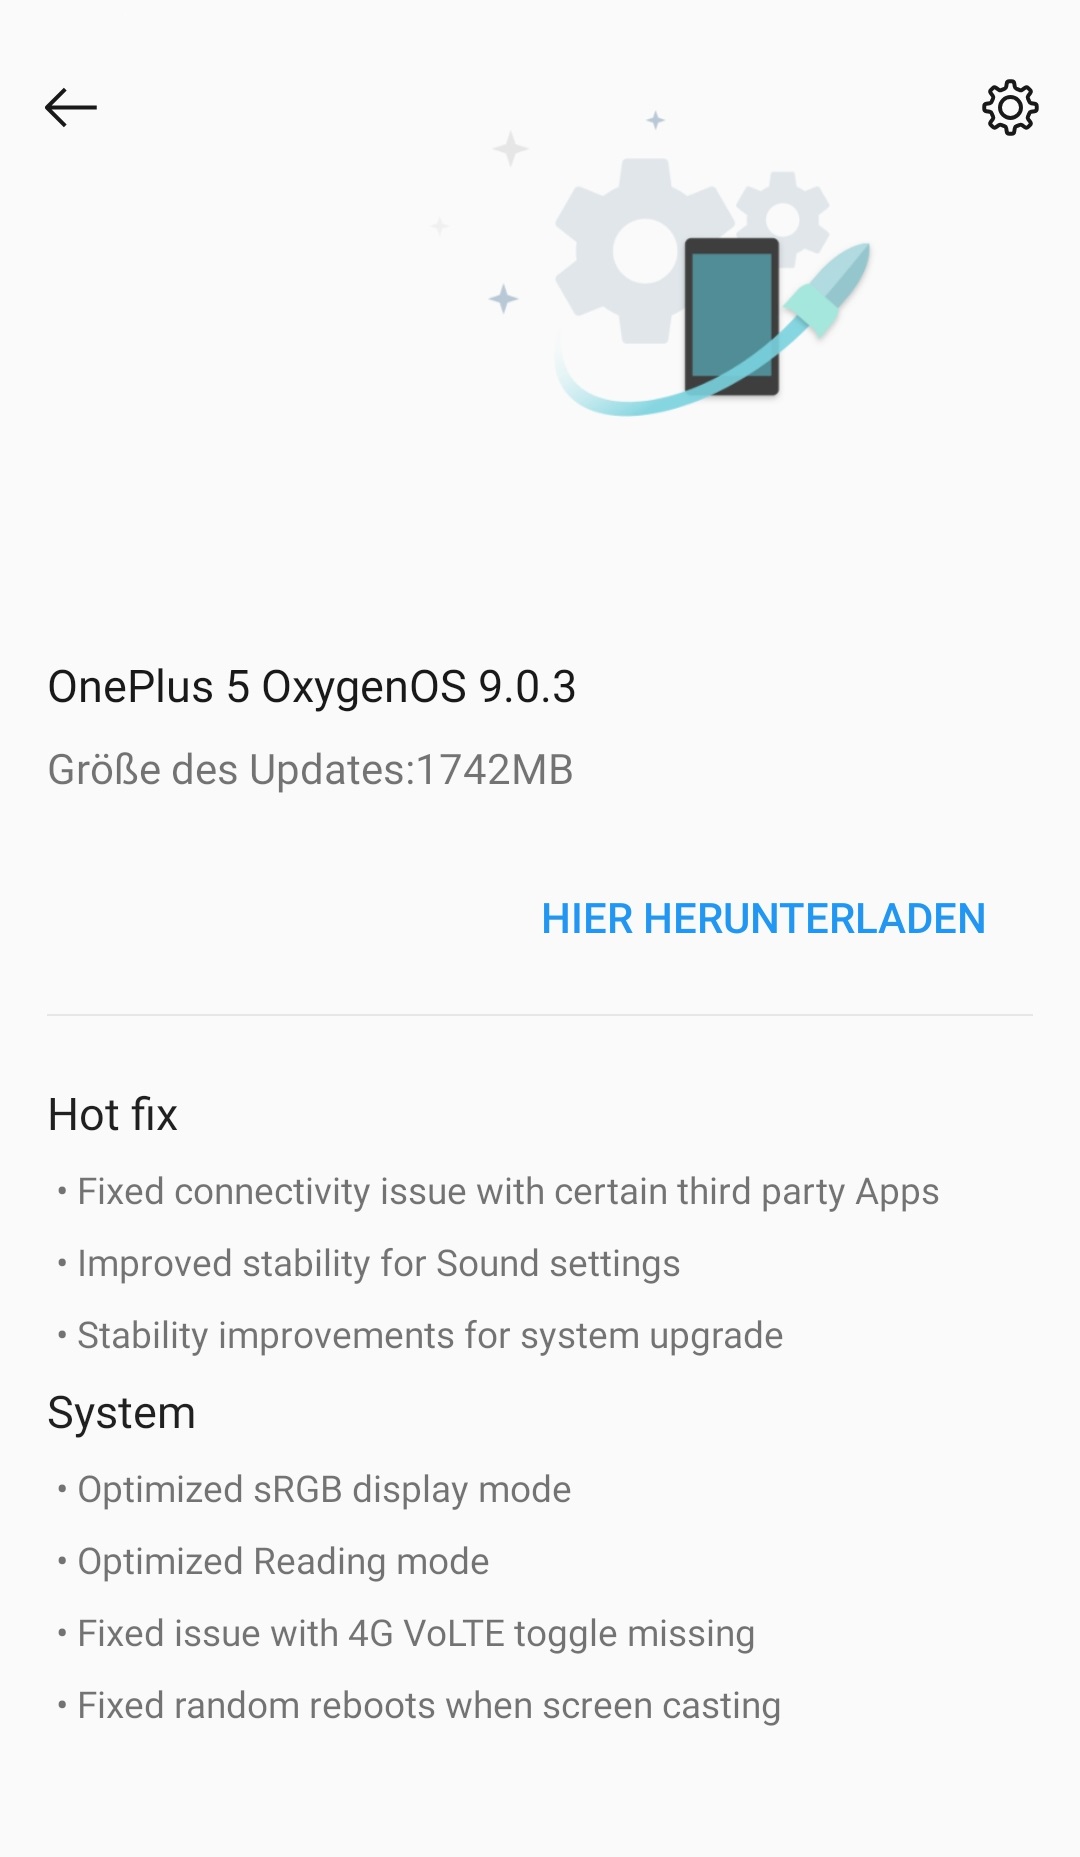 Oneplus 5 - OxygenOS 9.0.3